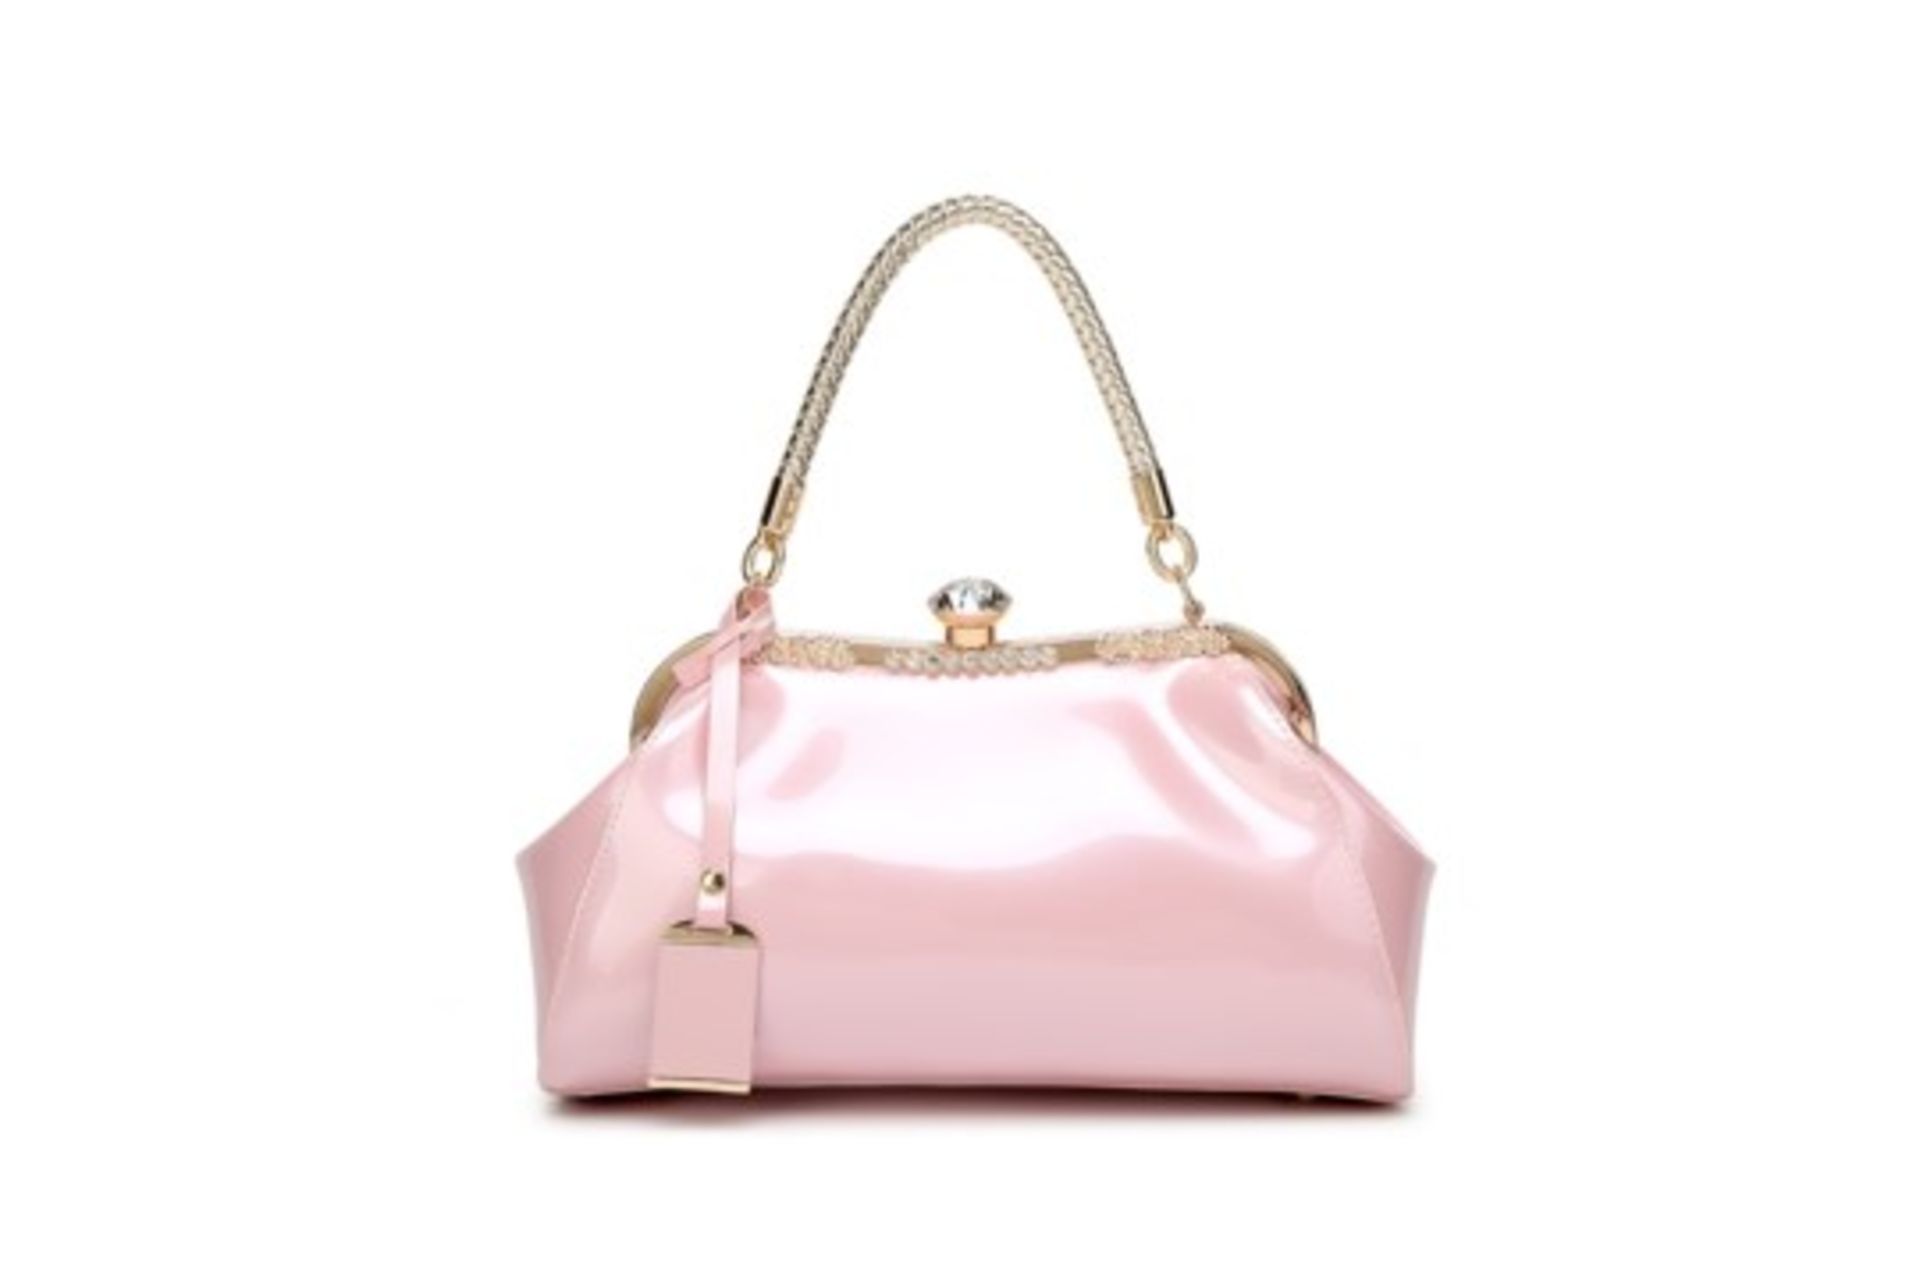 Brand New Womens Coolives Light Golden Shoulder Strap Handbag in Pink RRP £51.99